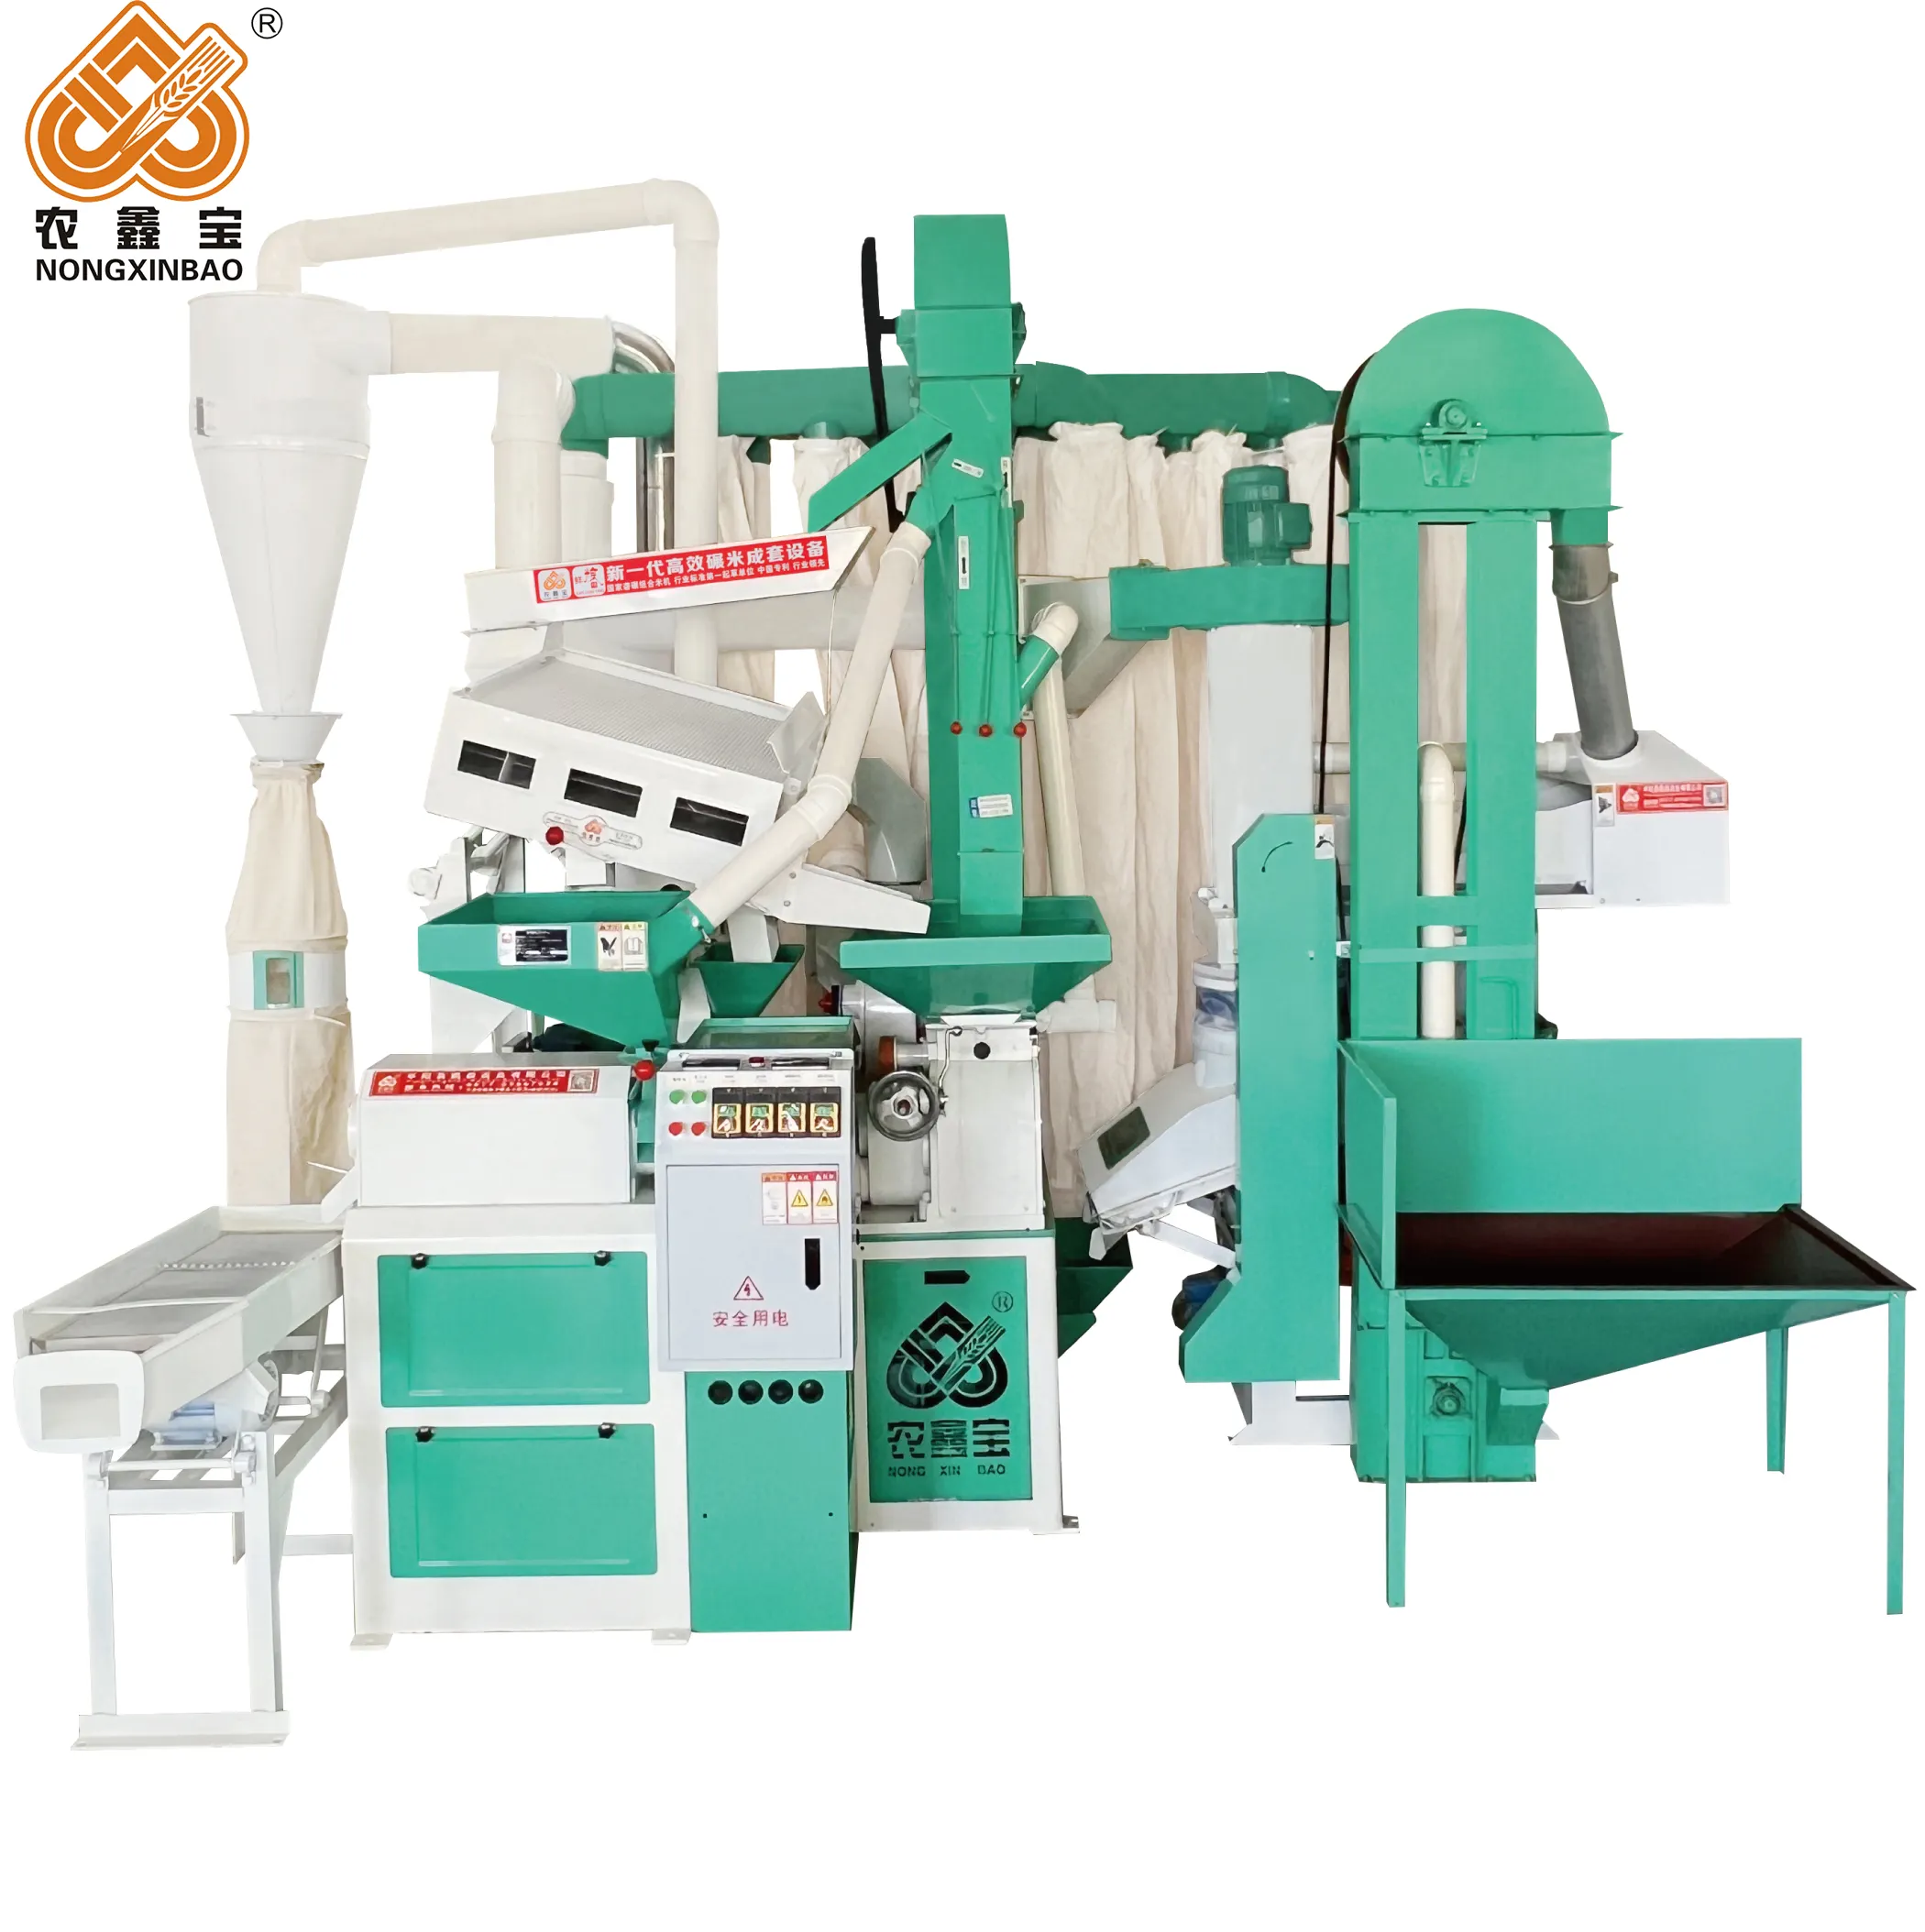 Yüksek hızlı pirinç freze makinesi/cm/dak pirinç değirmen tesisi/650-800 kg/saat beyazlatma pirinç makinesi